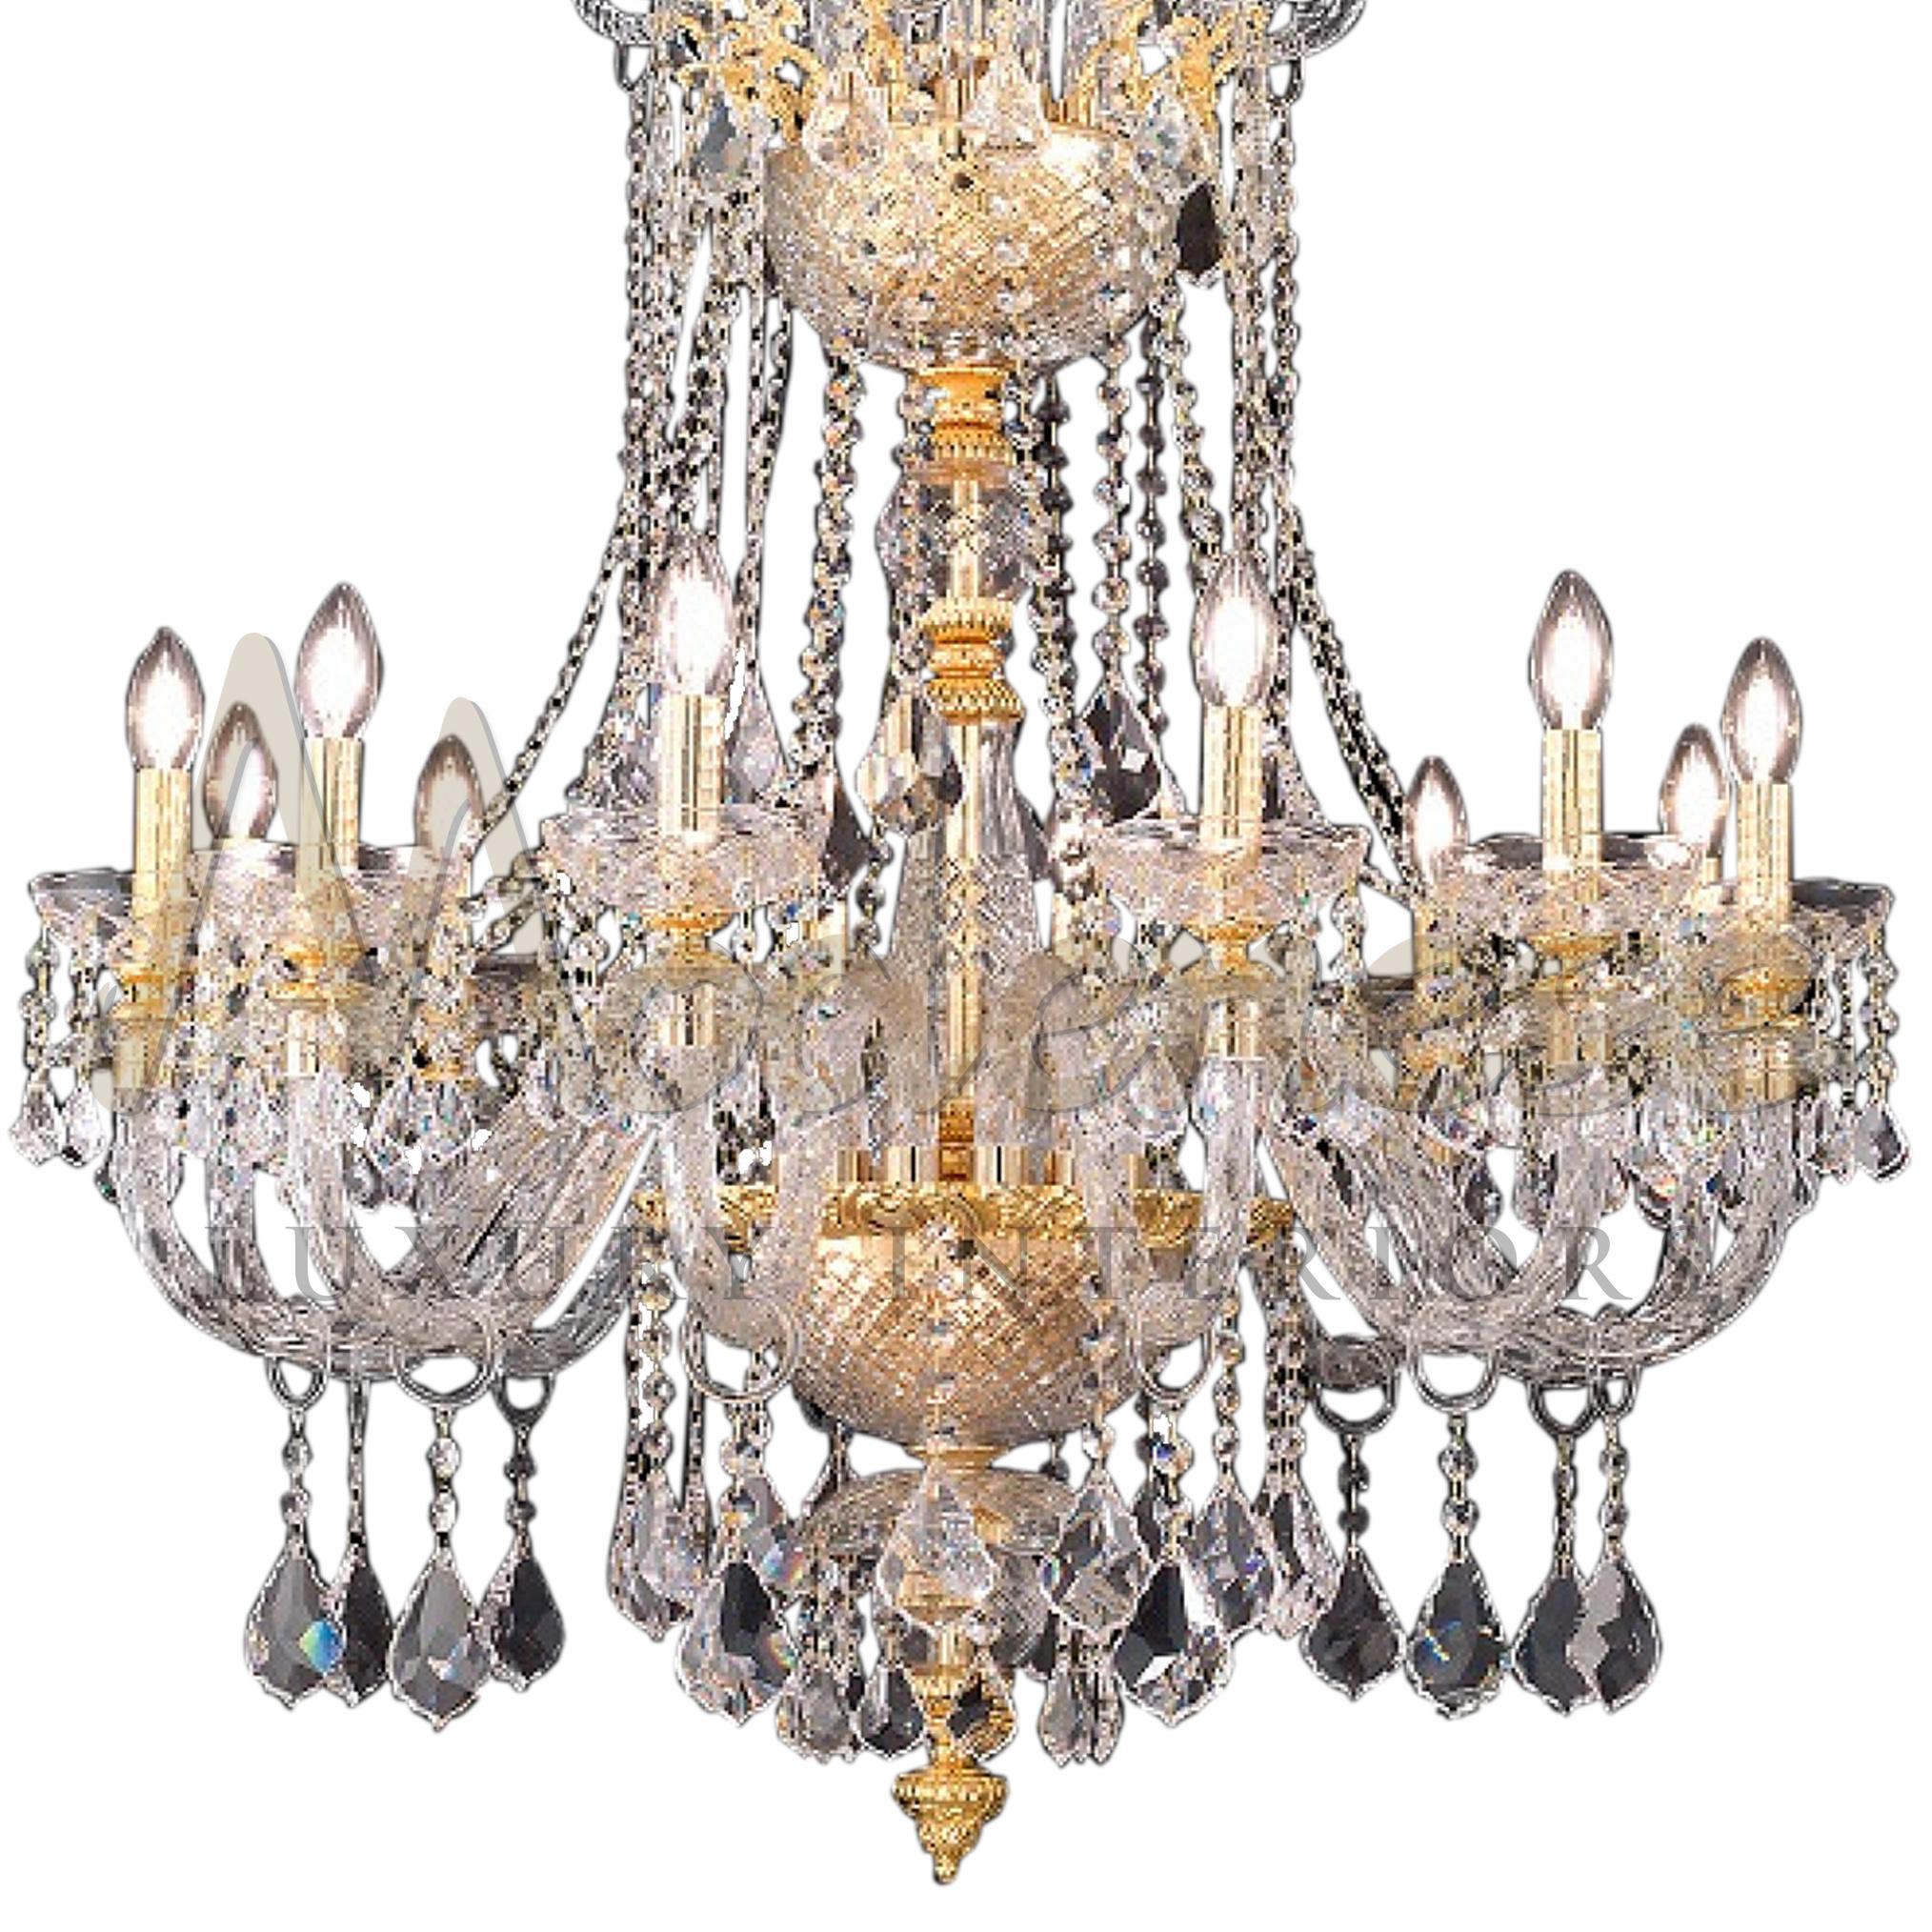 Der elegante italienische 12-flammige Kronleuchter mit funkelnden, luxuriösen Scholer-Kristallen und goldenen Oberflächen wird zu einer königlichen Dekoration für jedes Interieur, egal ob es sich um ein Restaurant, ein Hotel, ein Landhaus oder eine